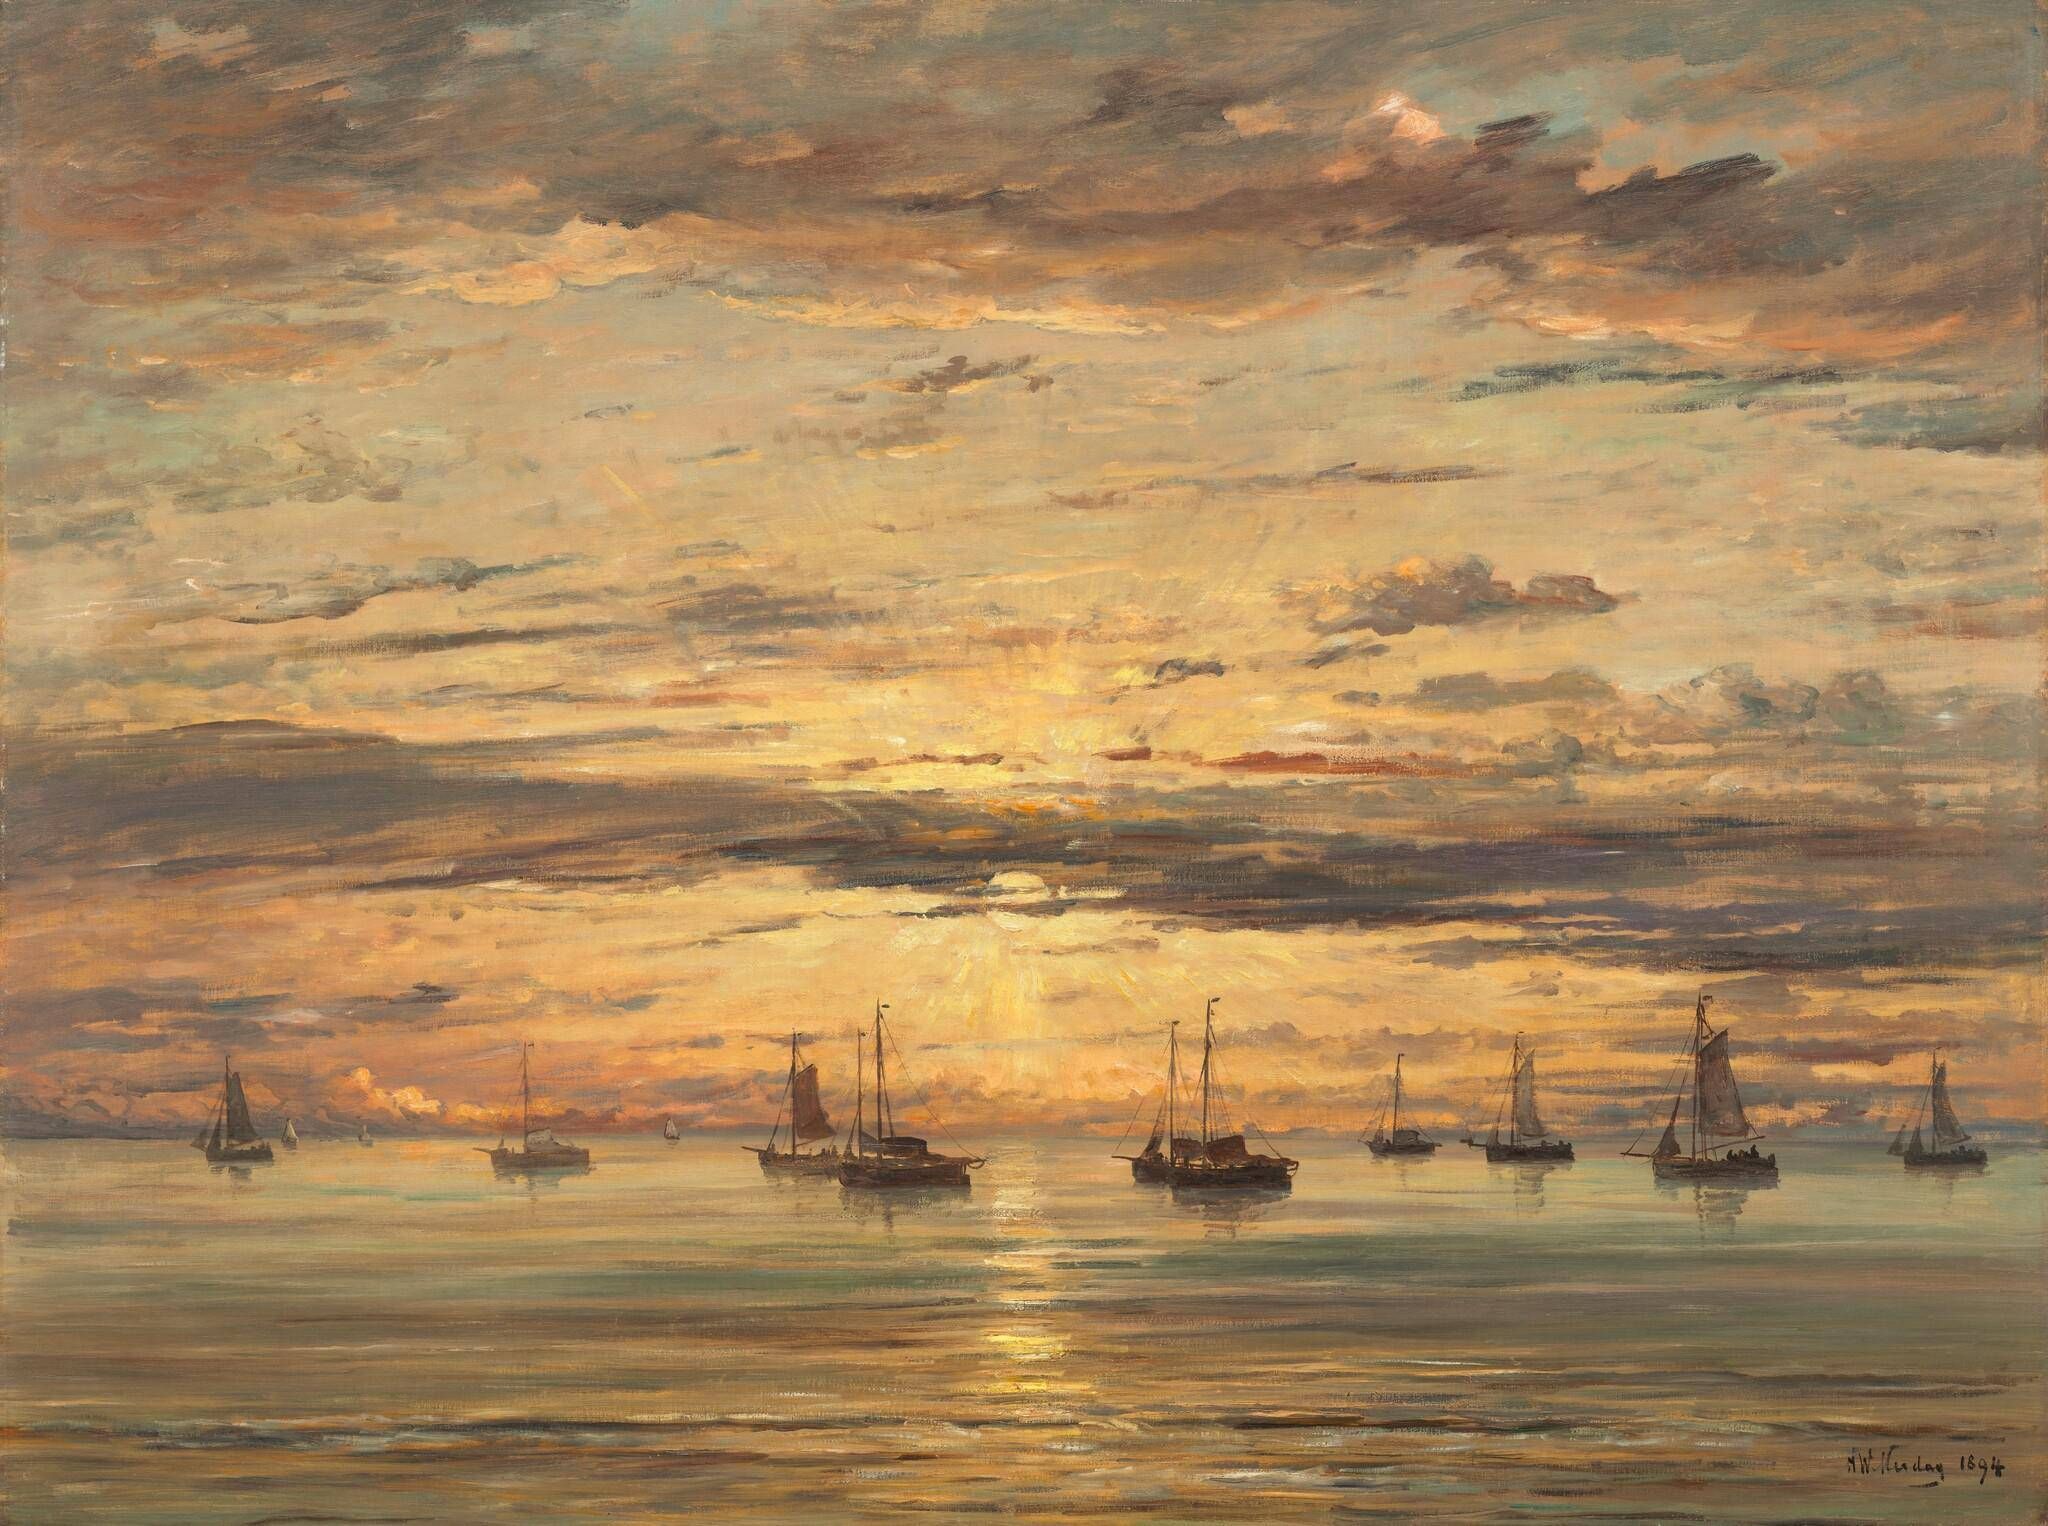 Sunset at Scheveningen:  A Fleet of Fishing Vessels at Anchor